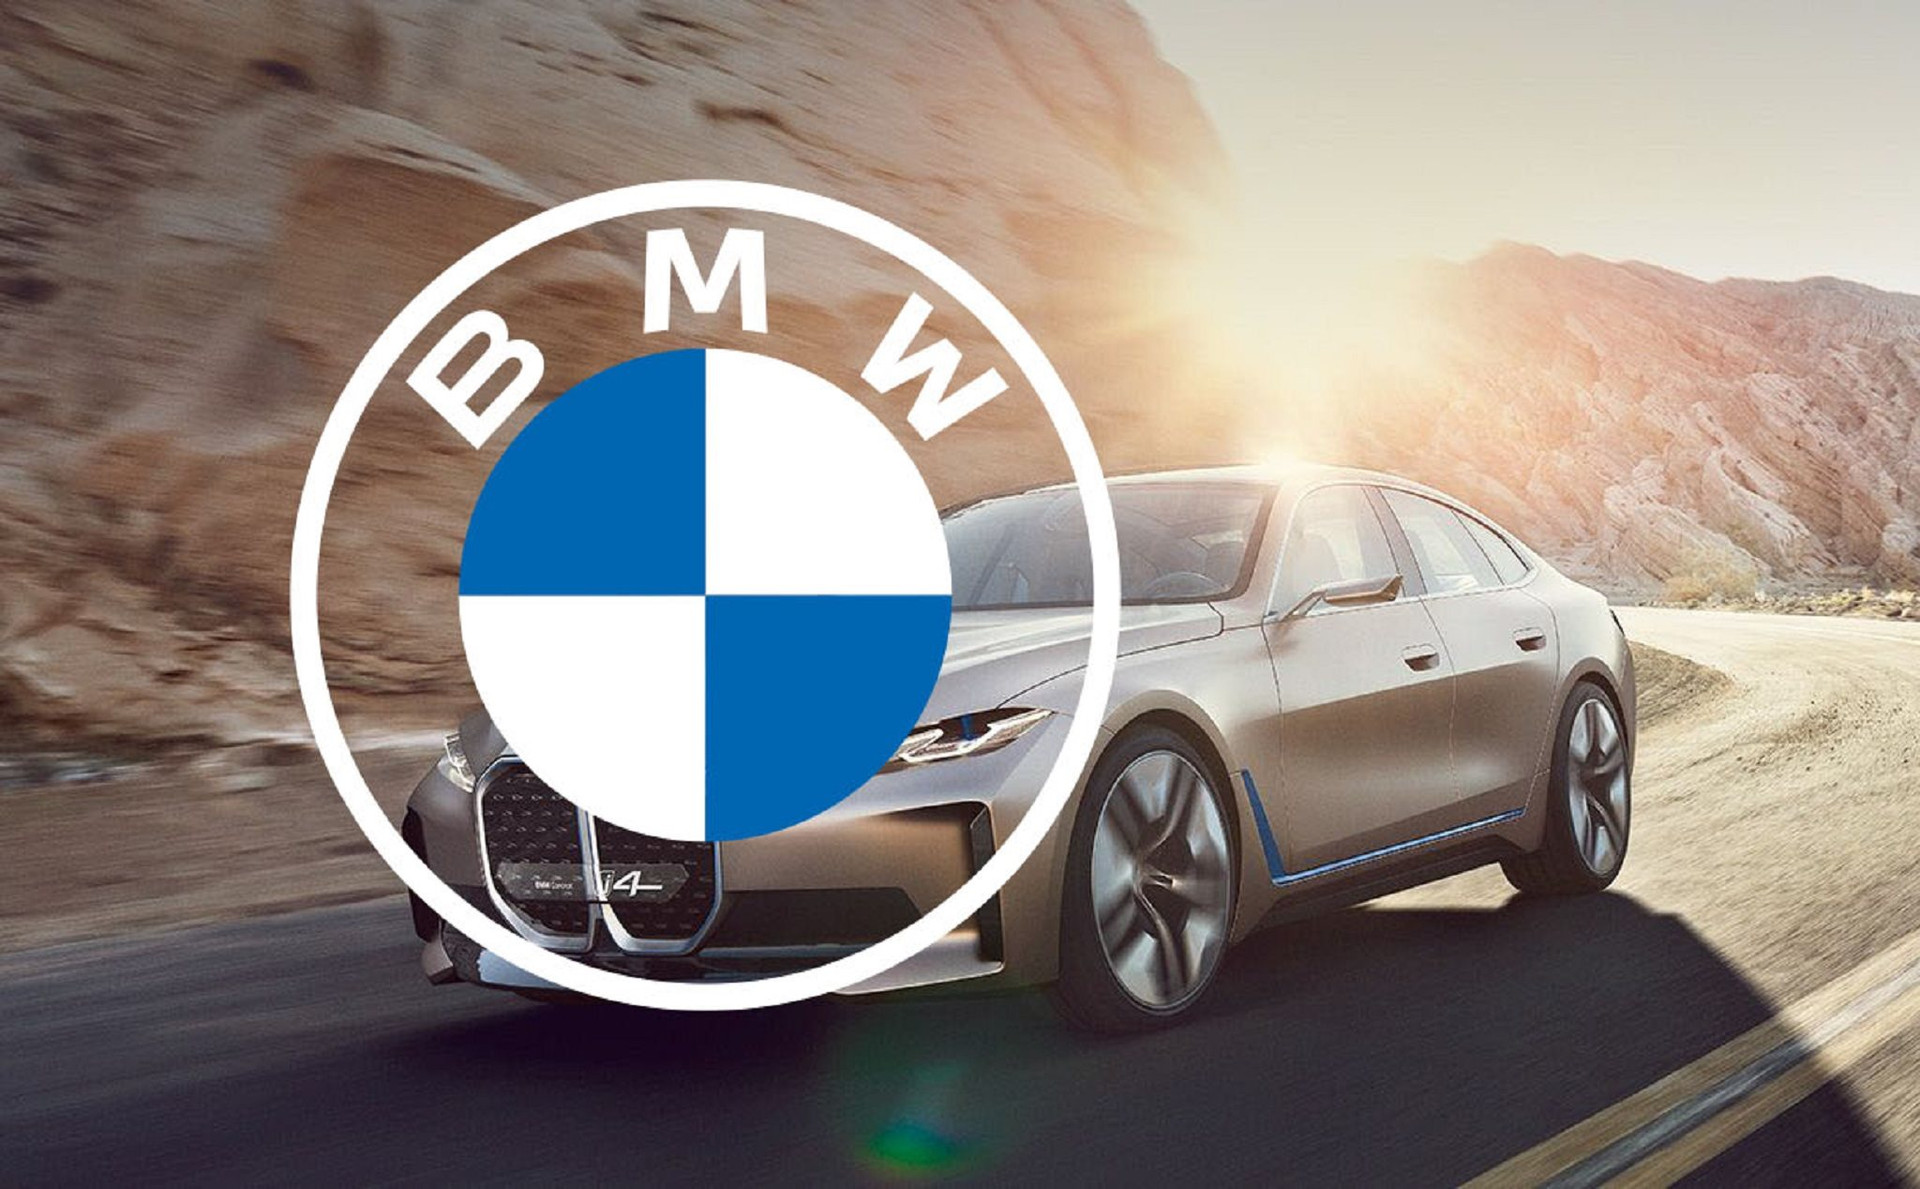 Nóng: BMW chuẩn bị hợp tác sản xuất ô tô tại Việt Nam